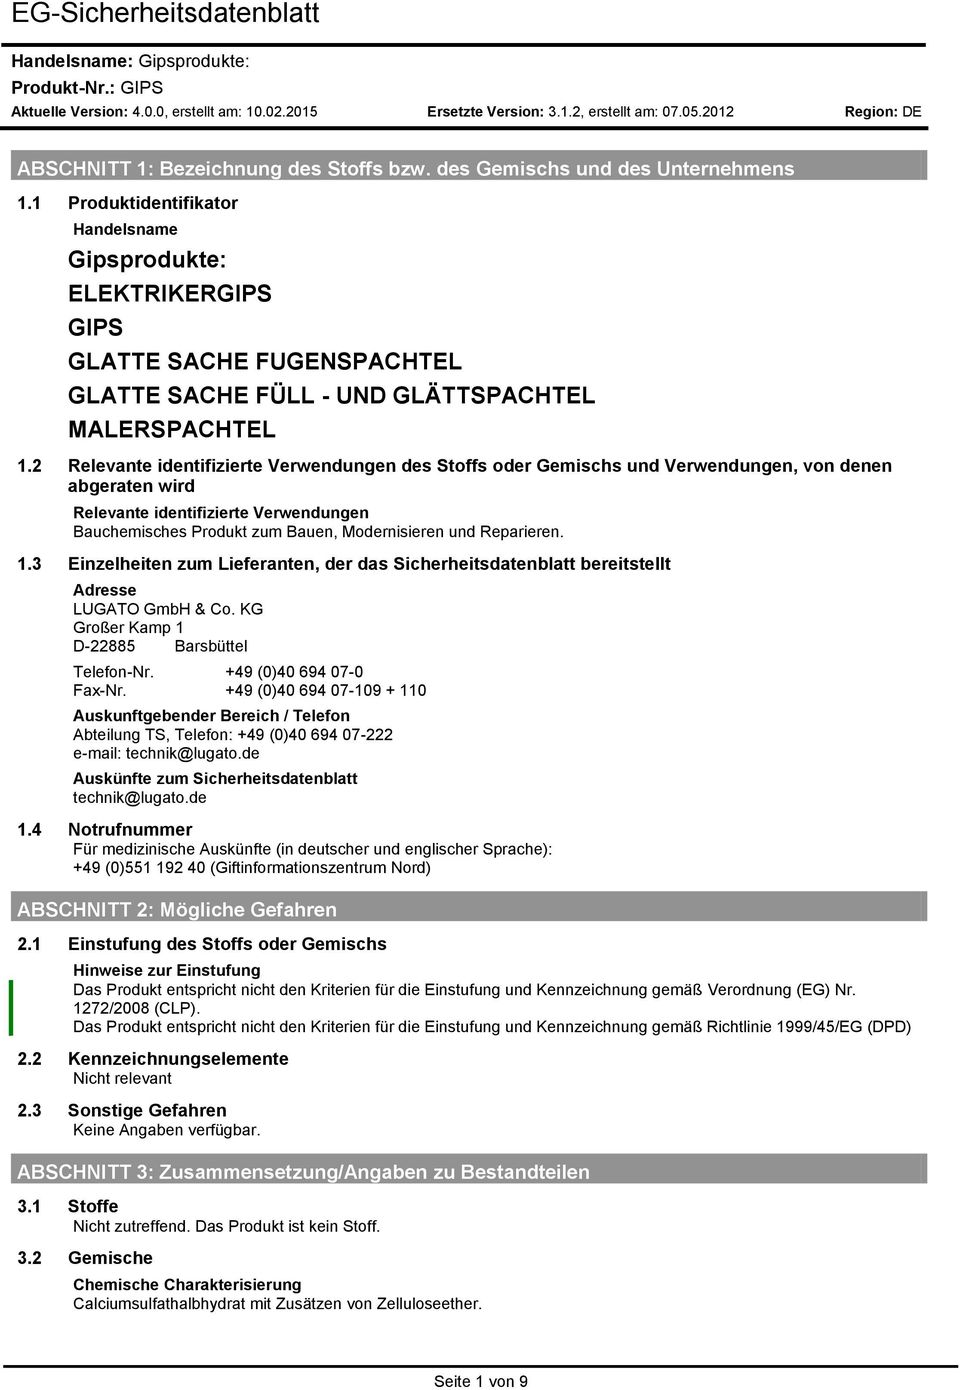 Reparieren. 1.3 Einzelheiten zum Lieferanten, der das Sicherheitsdatenblatt bereitstellt Adresse LUGATO GmbH & Co. KG Großer Kamp 1 D-22885 Barsbüttel Telefon-Nr. +49 (0)40 694 07-0 Fax-Nr.